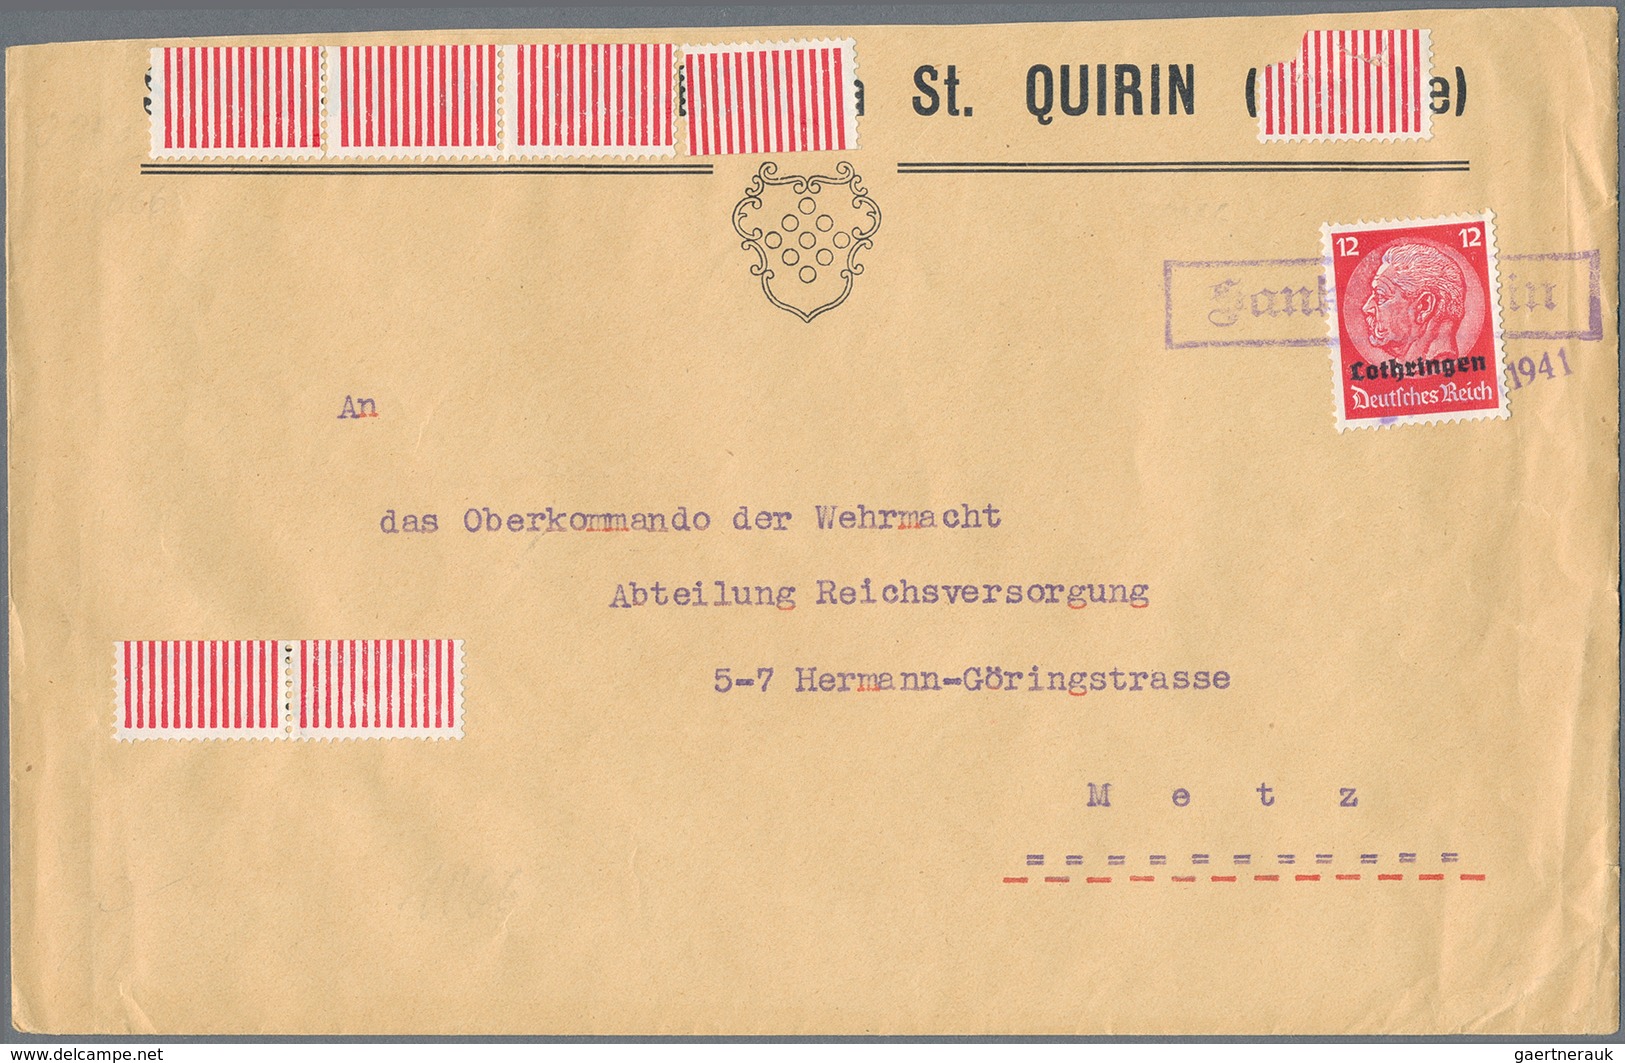 Dt. Besetzung II WK - Lothringen: 1940/1941, interessantes Lot von 125 Belegen der frühen Besetzungs